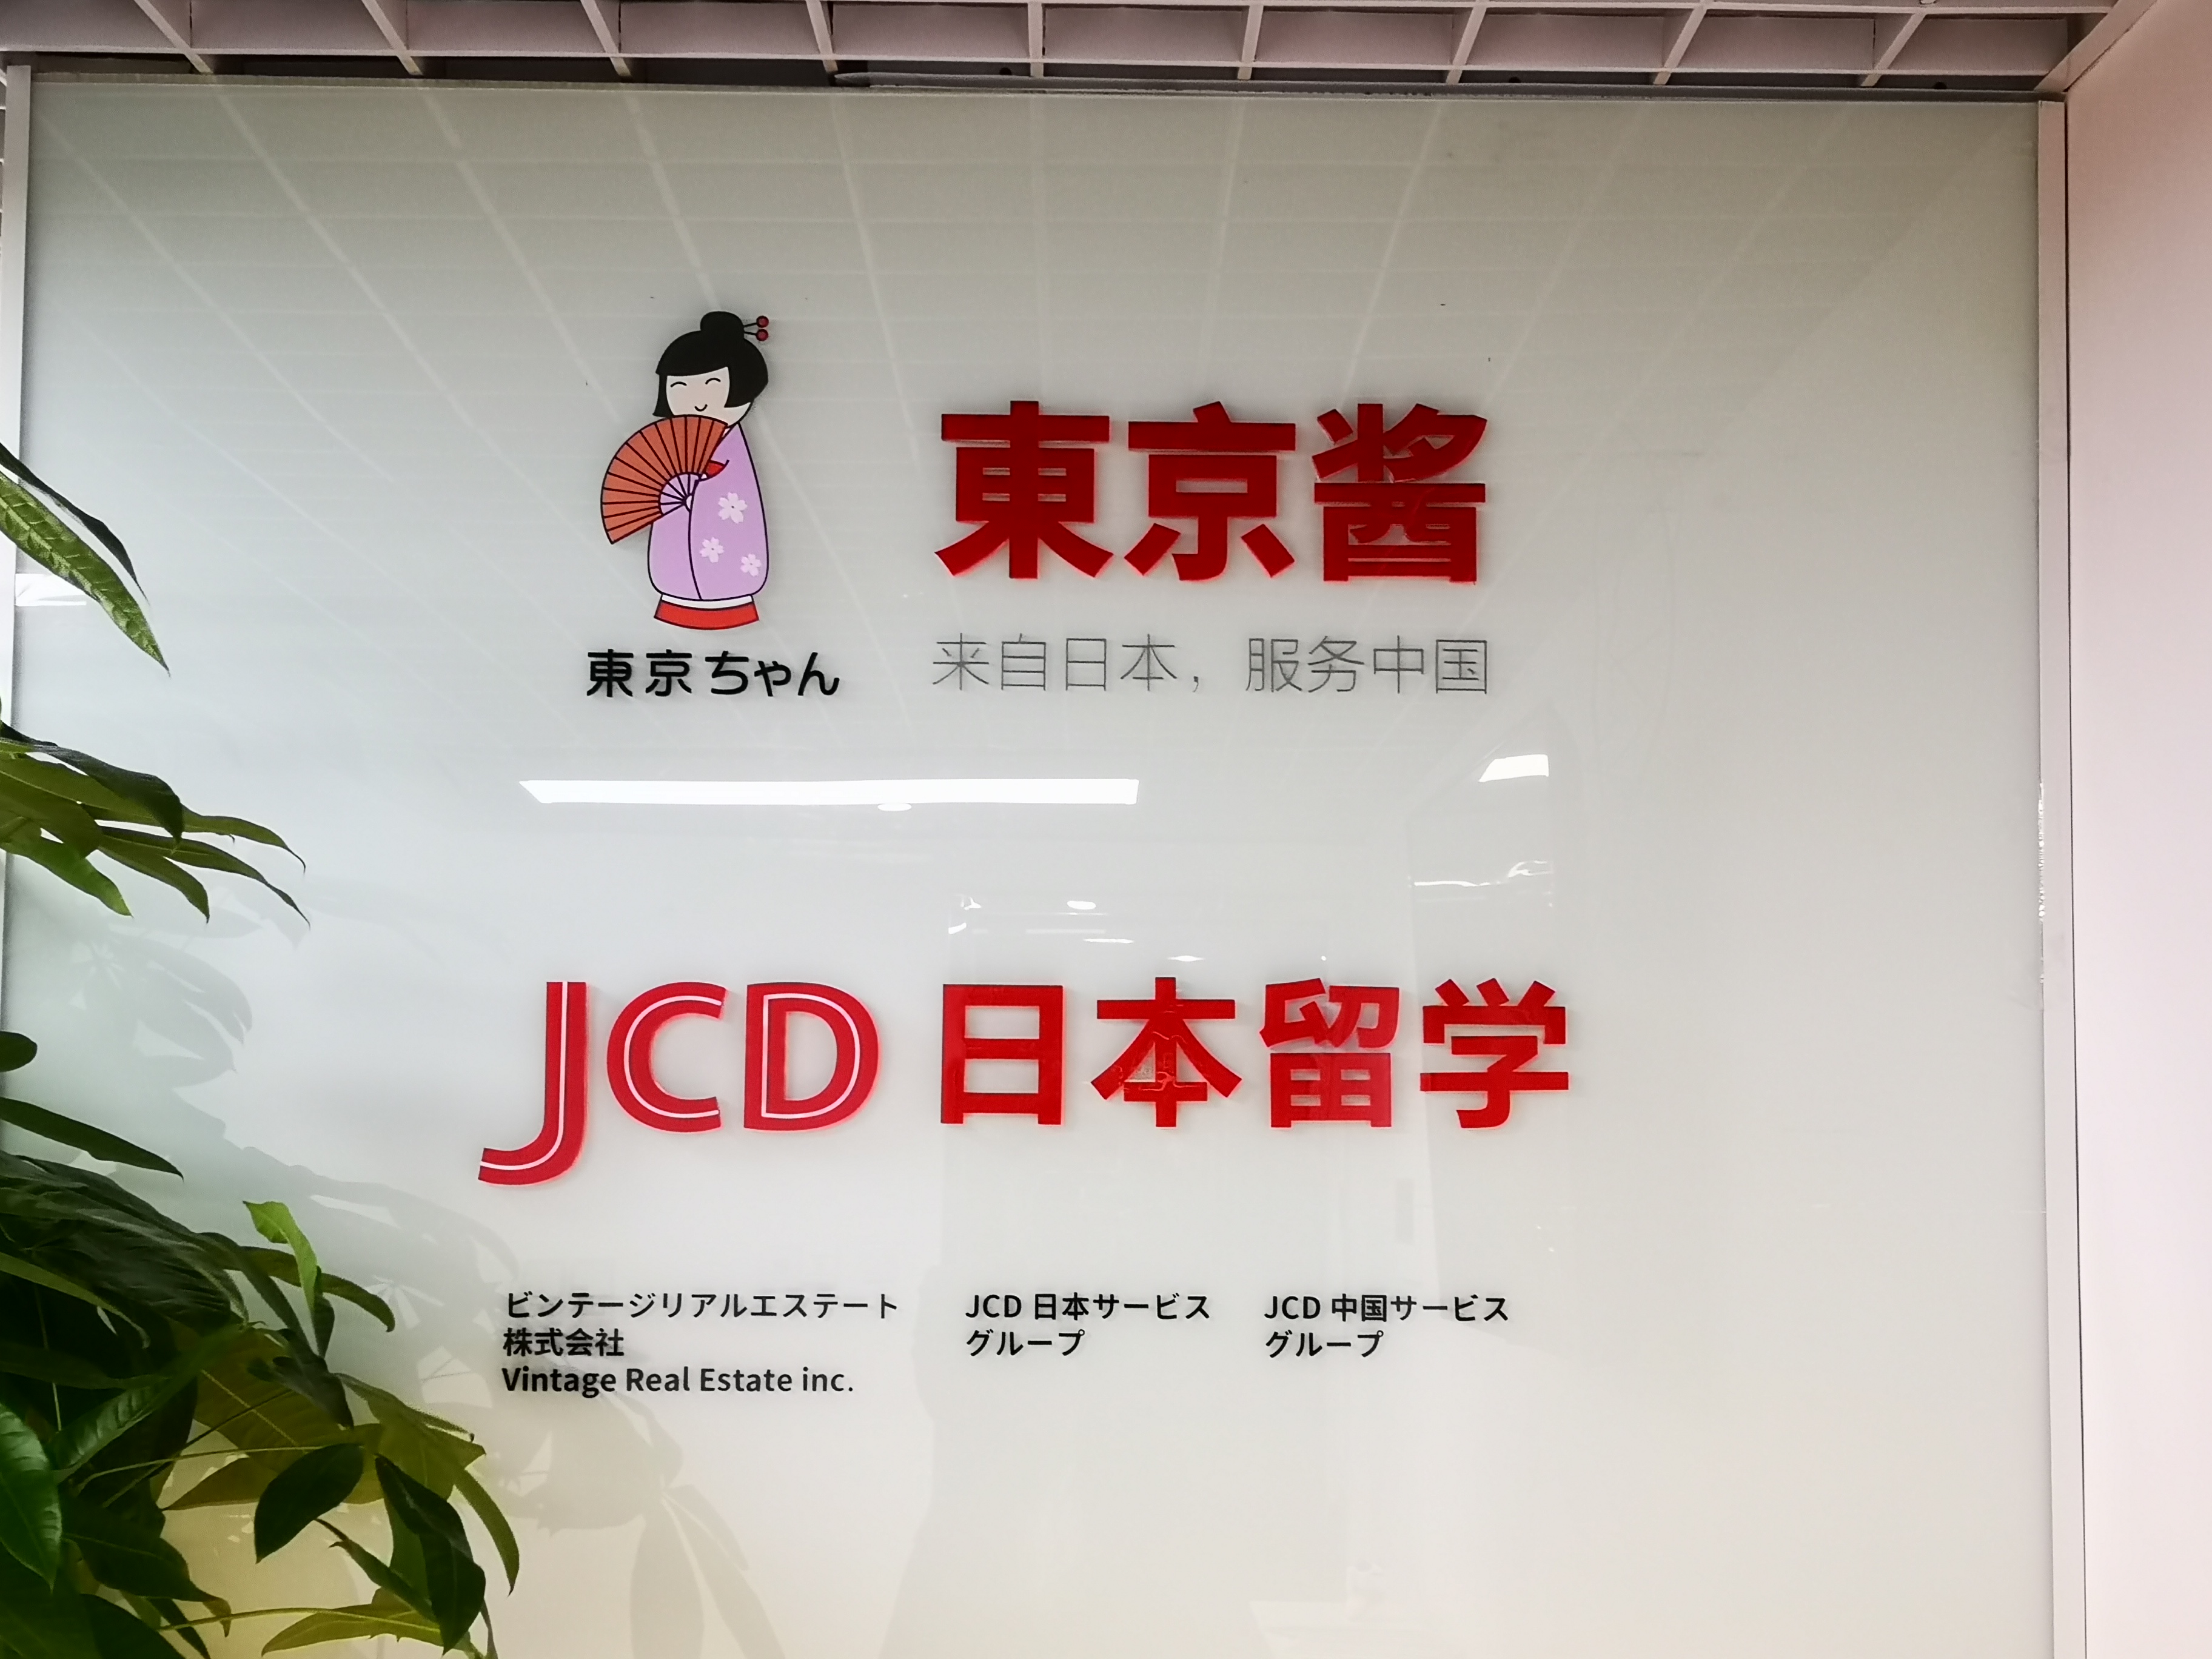 上海JCD杰斯蒂日本留学(静安校区)